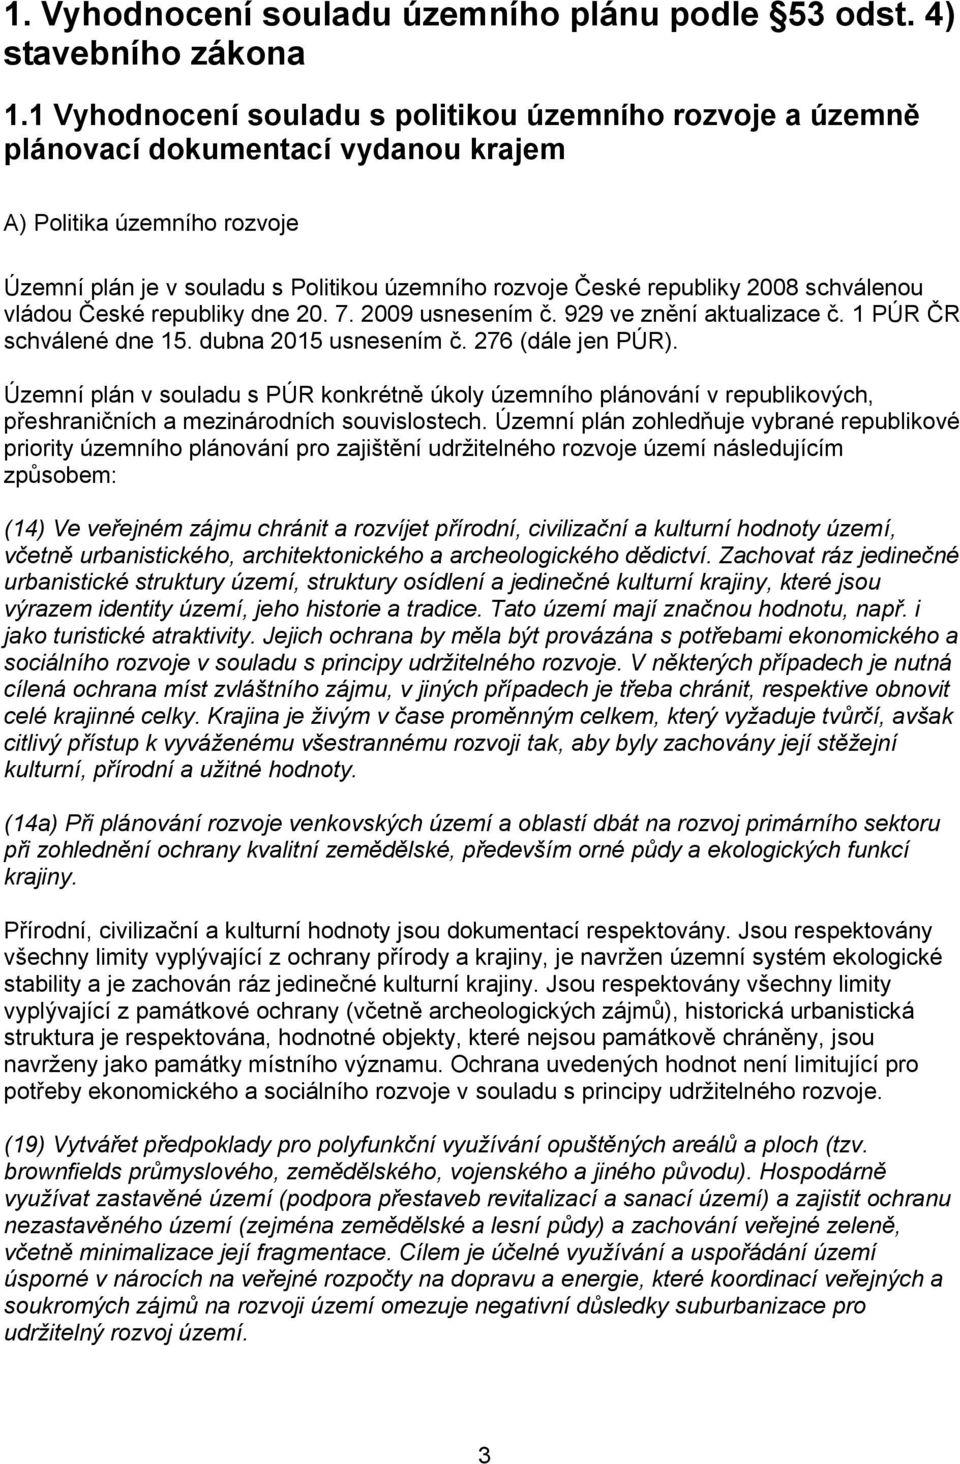 2008 schválenou vládou České republiky dne 20. 7. 2009 usnesením č. 929 ve znění aktualizace č. 1 PÚR ČR schválené dne 15. dubna 2015 usnesením č. 276 (dále jen PÚR).